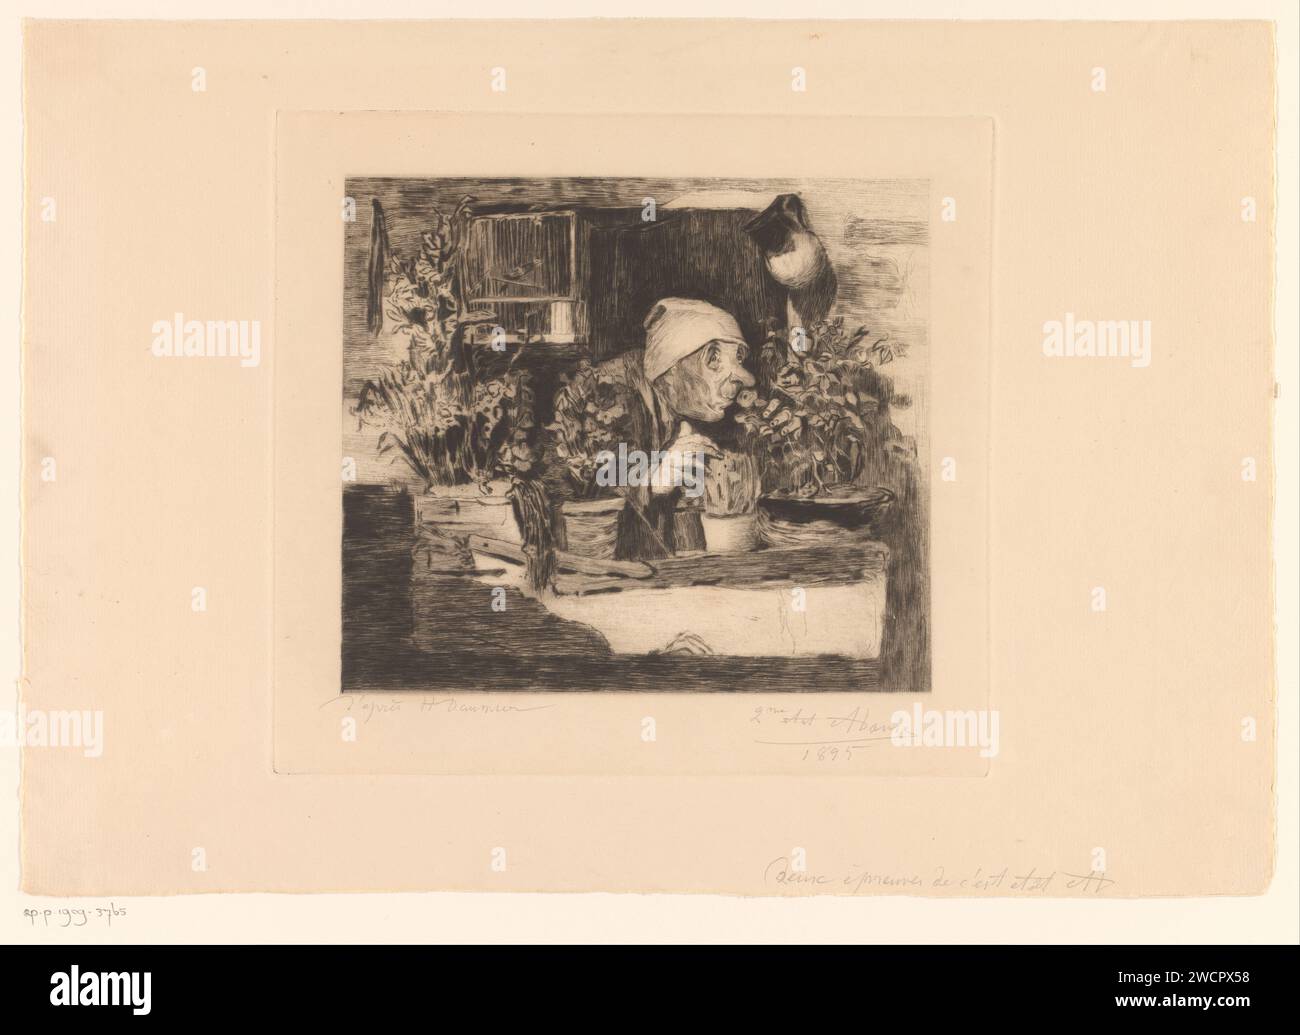 Alter Mann mit Schlafmütze riecht nach den Blumen in seiner Fensterbank, Auguste Danse, nach Honoré Daumier, 1895 Druckpapier Ätzen / Trockenpunkt riechen, riechen (einer der fünf Sinne). Alter Mann Stockfoto